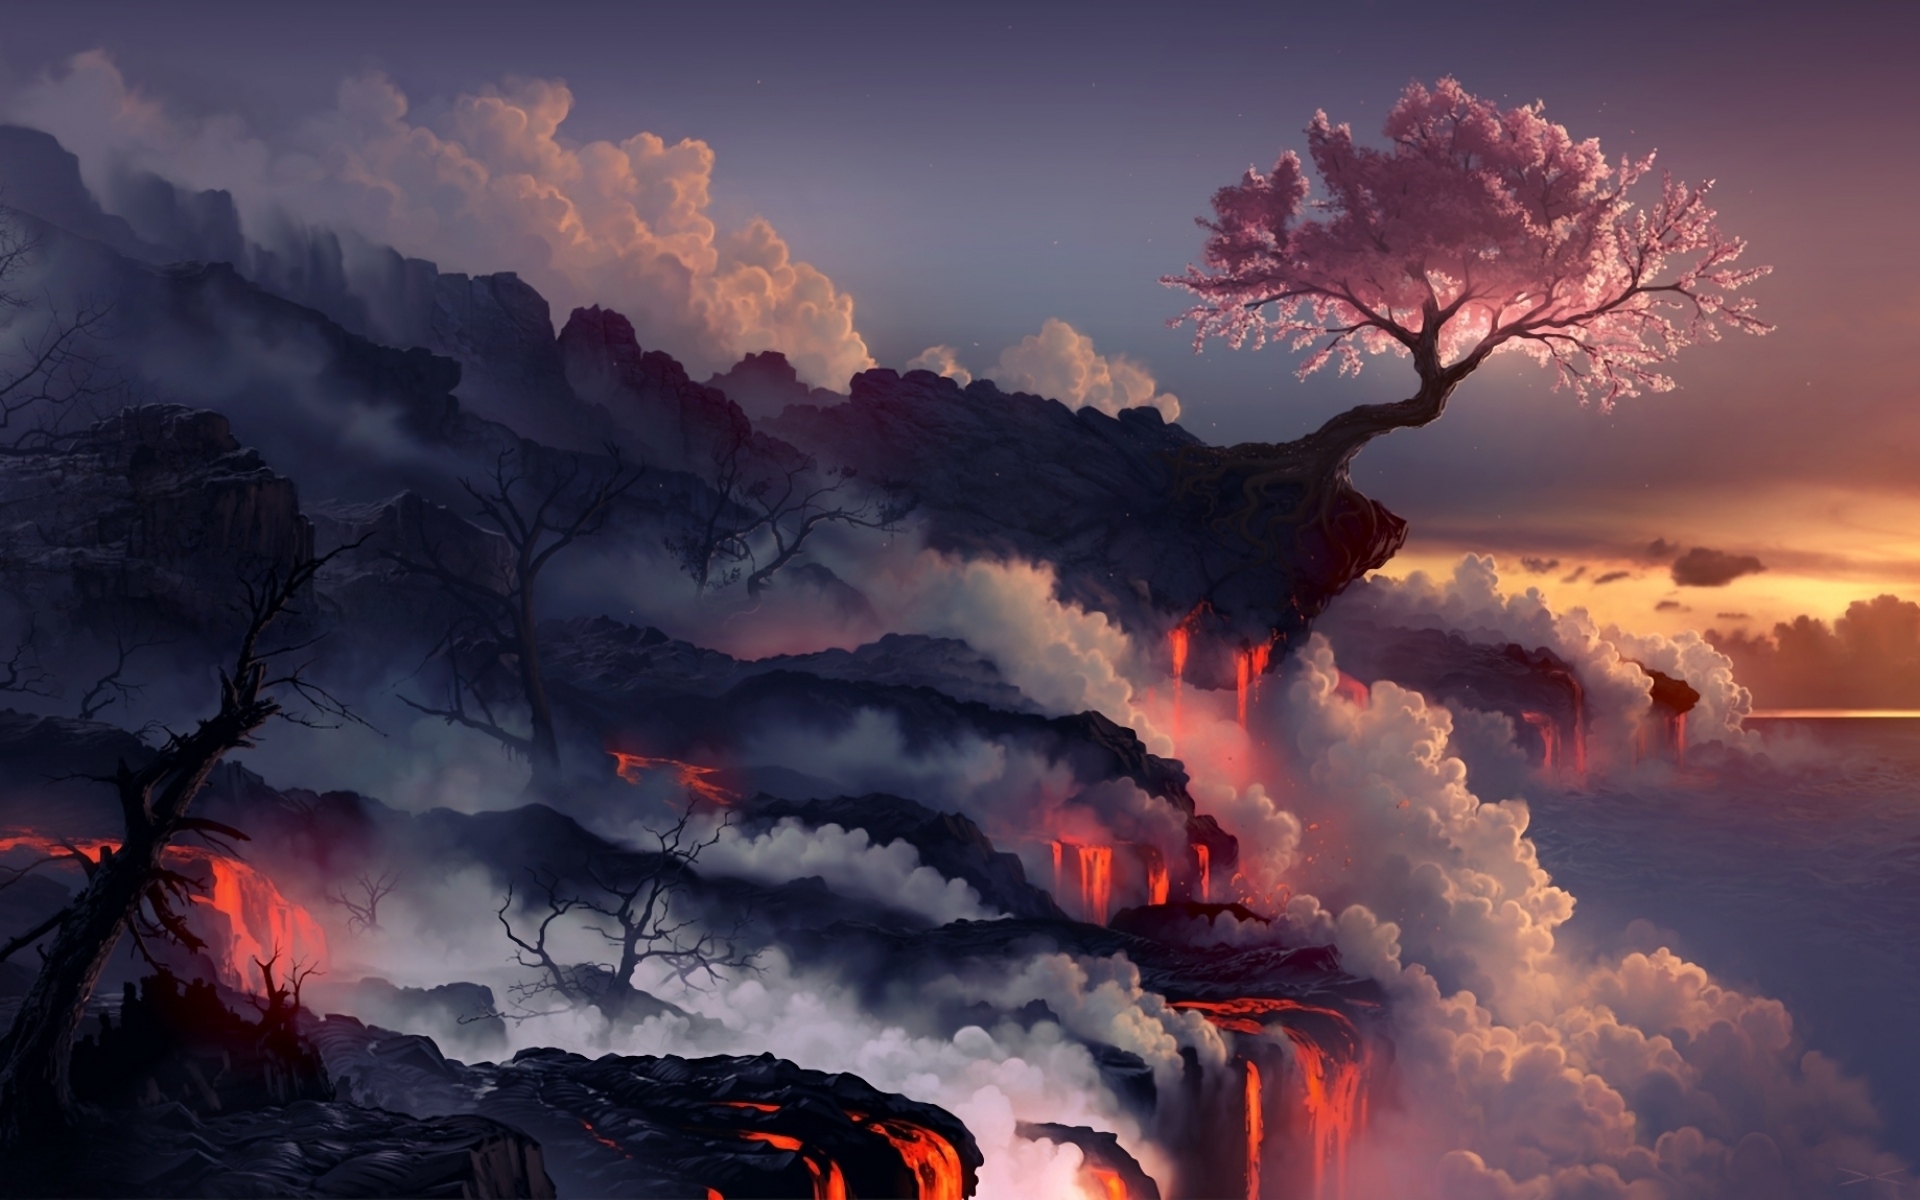 Картинки Извержение, лава, вулкан, восточная вишня, дерево фото и обои на рабочий стол